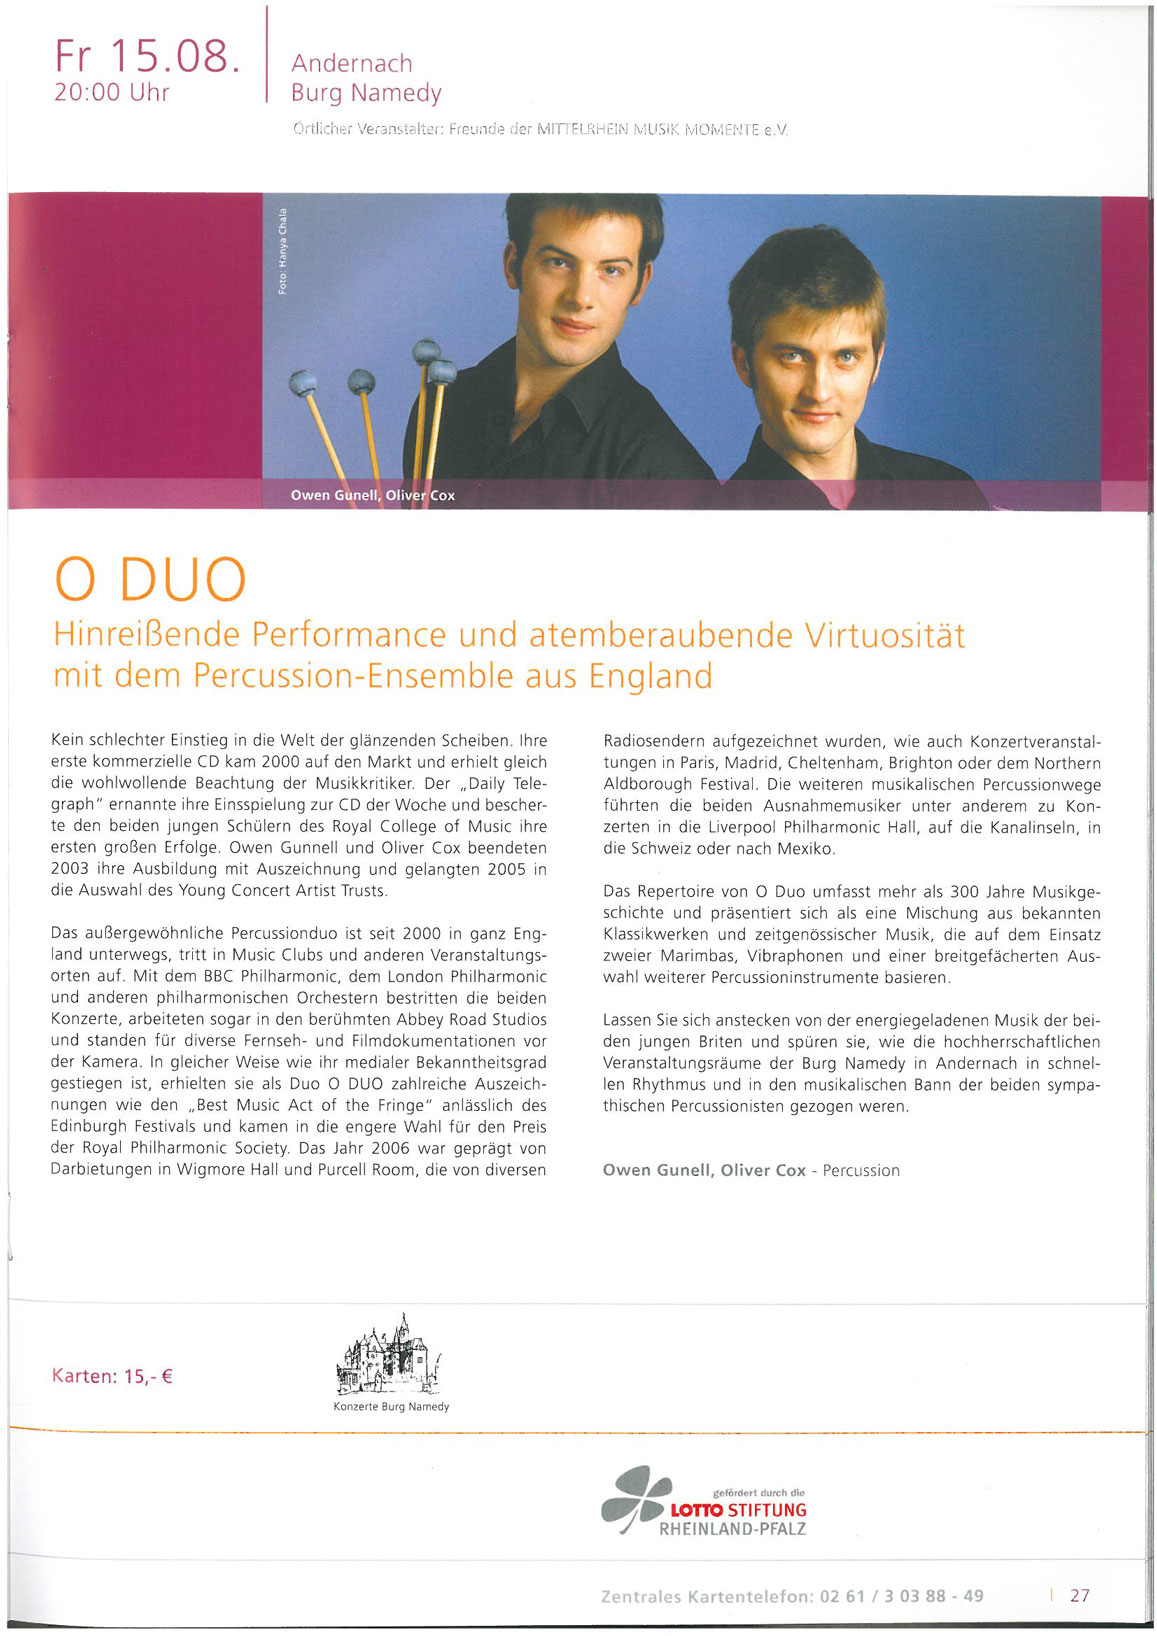 Programme, 2008, Mittelrhein Musik Momente